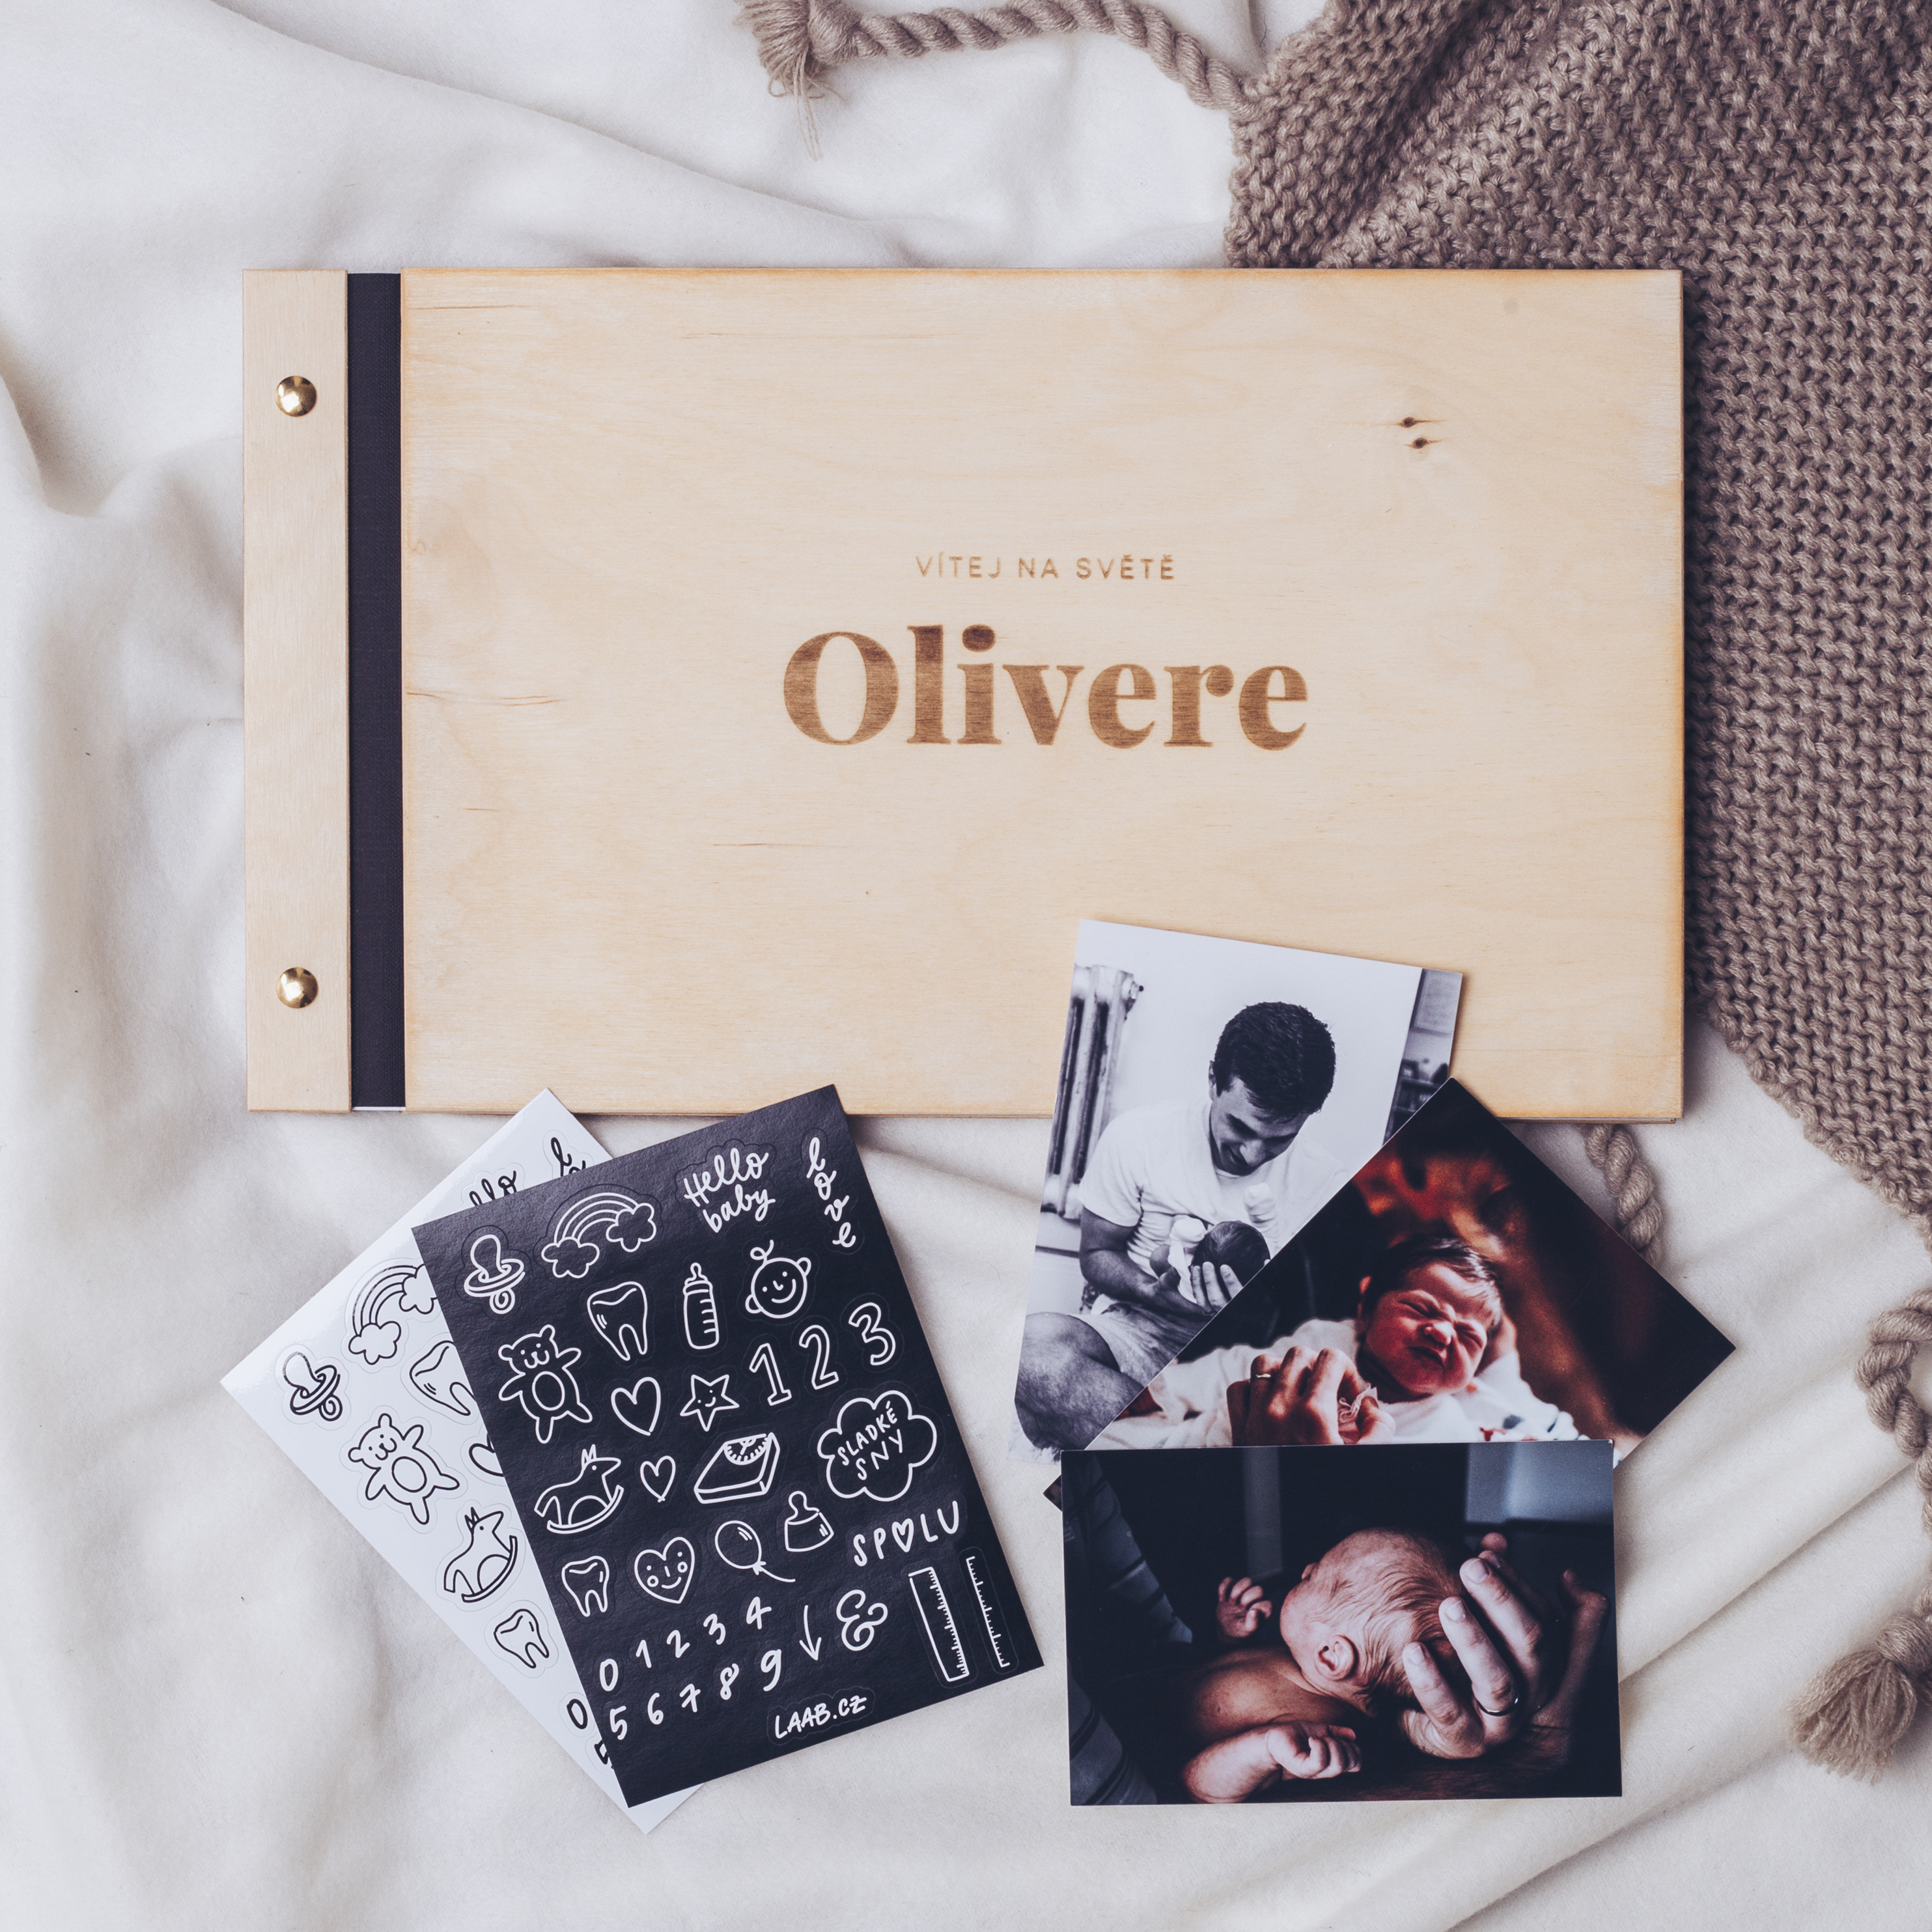 dřevěné fotoalbum Oliver: FORMÁT FOTOALBA na šířku, POČET LISTŮ 40, FORMÁT FOTOALBA čtverec, POČET LISTŮ 25, BARVA LISTŮ bílá